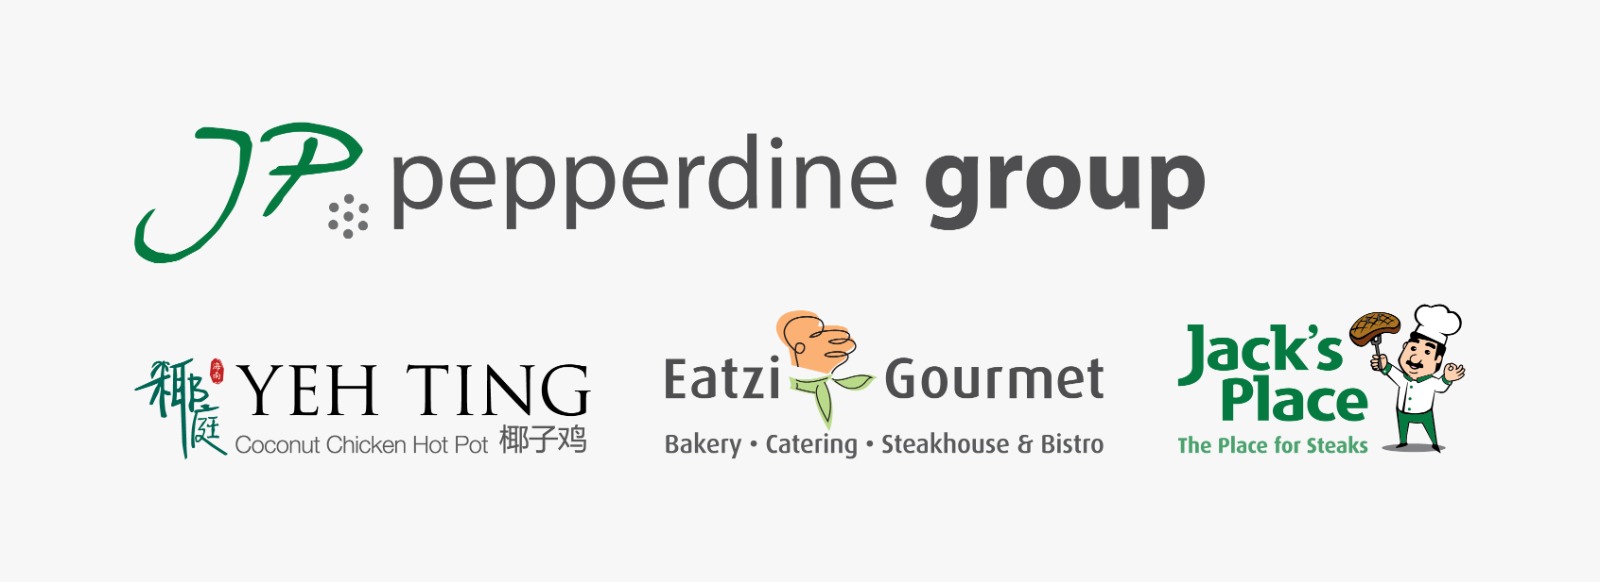 JP Pepperdine logo